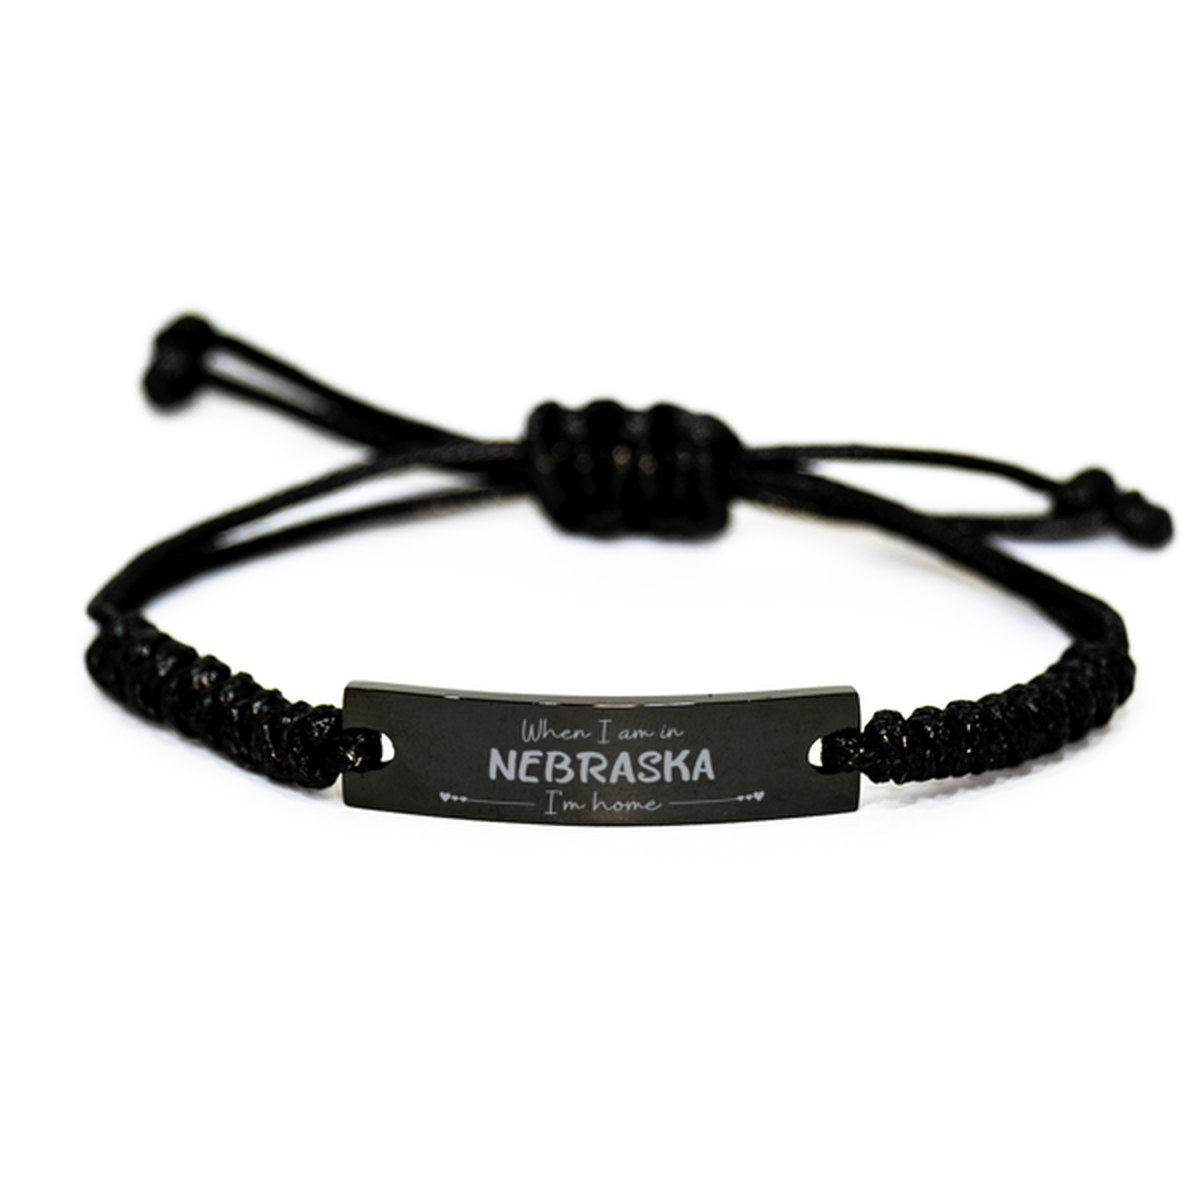 When I am in Nebraska I'm home Black Rope Bracelet, Cheap Gifts For Nebraska, State Nebraska Birthday Gifts for Friends Coworker